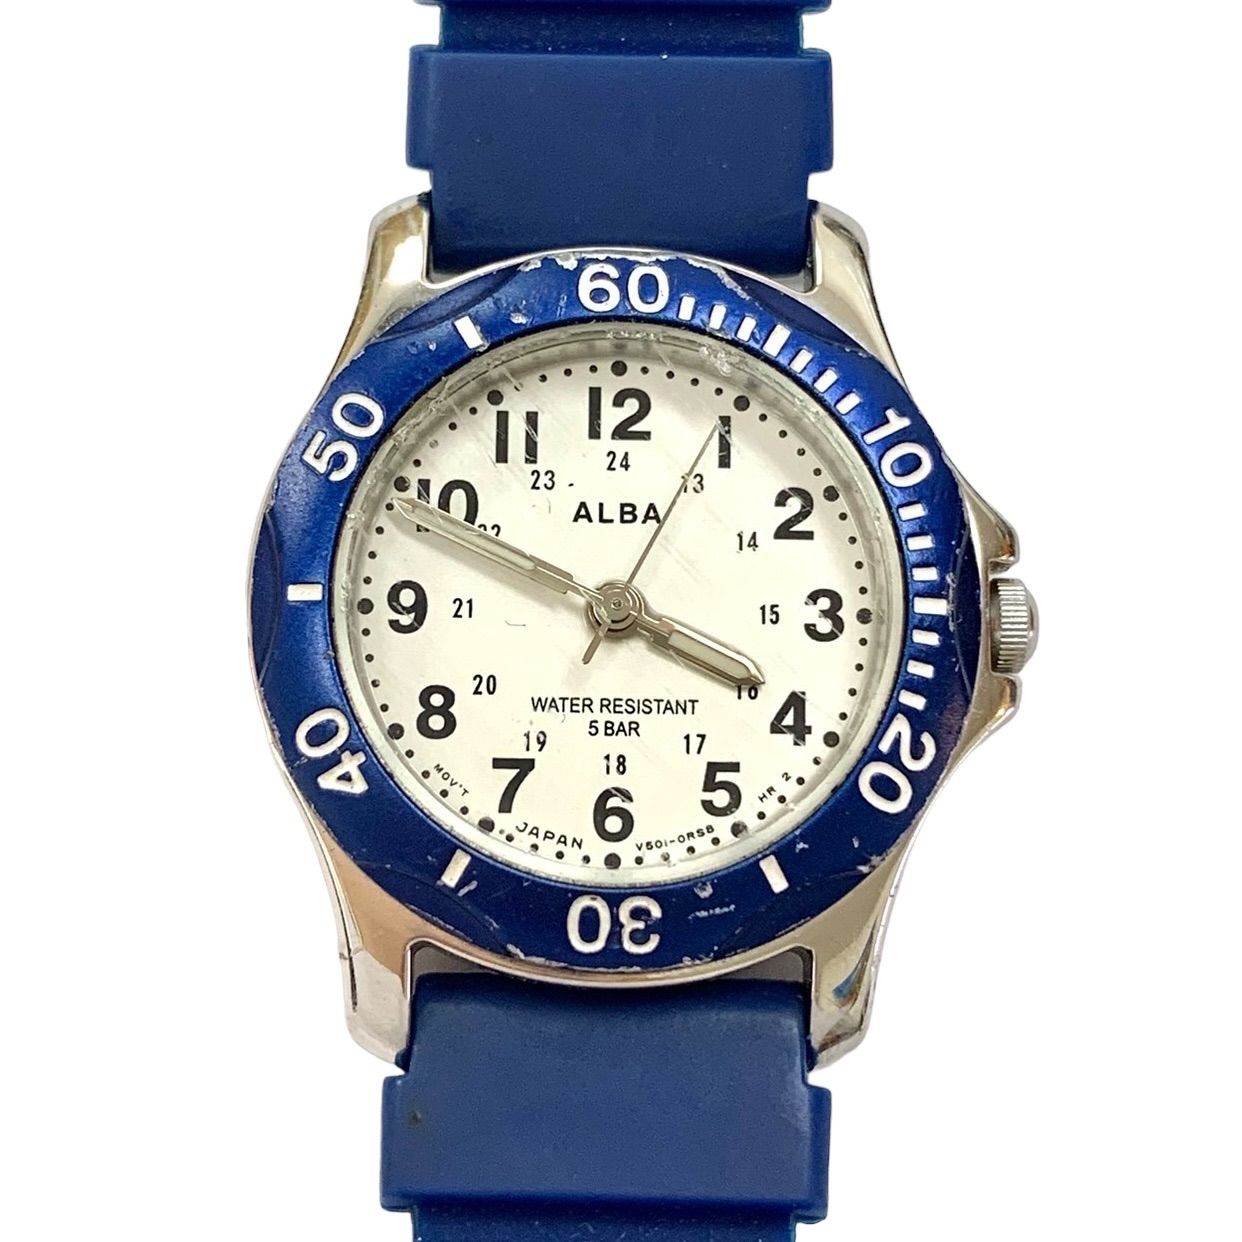 【SEIKO ALBA ️セイコーアルバ】 24.05.18新品電池交換済稼働 ホワイト×ブルーカラー ダイバーズウォッチタイプ V501-1C10 アナログレディース腕時計 (AYA)